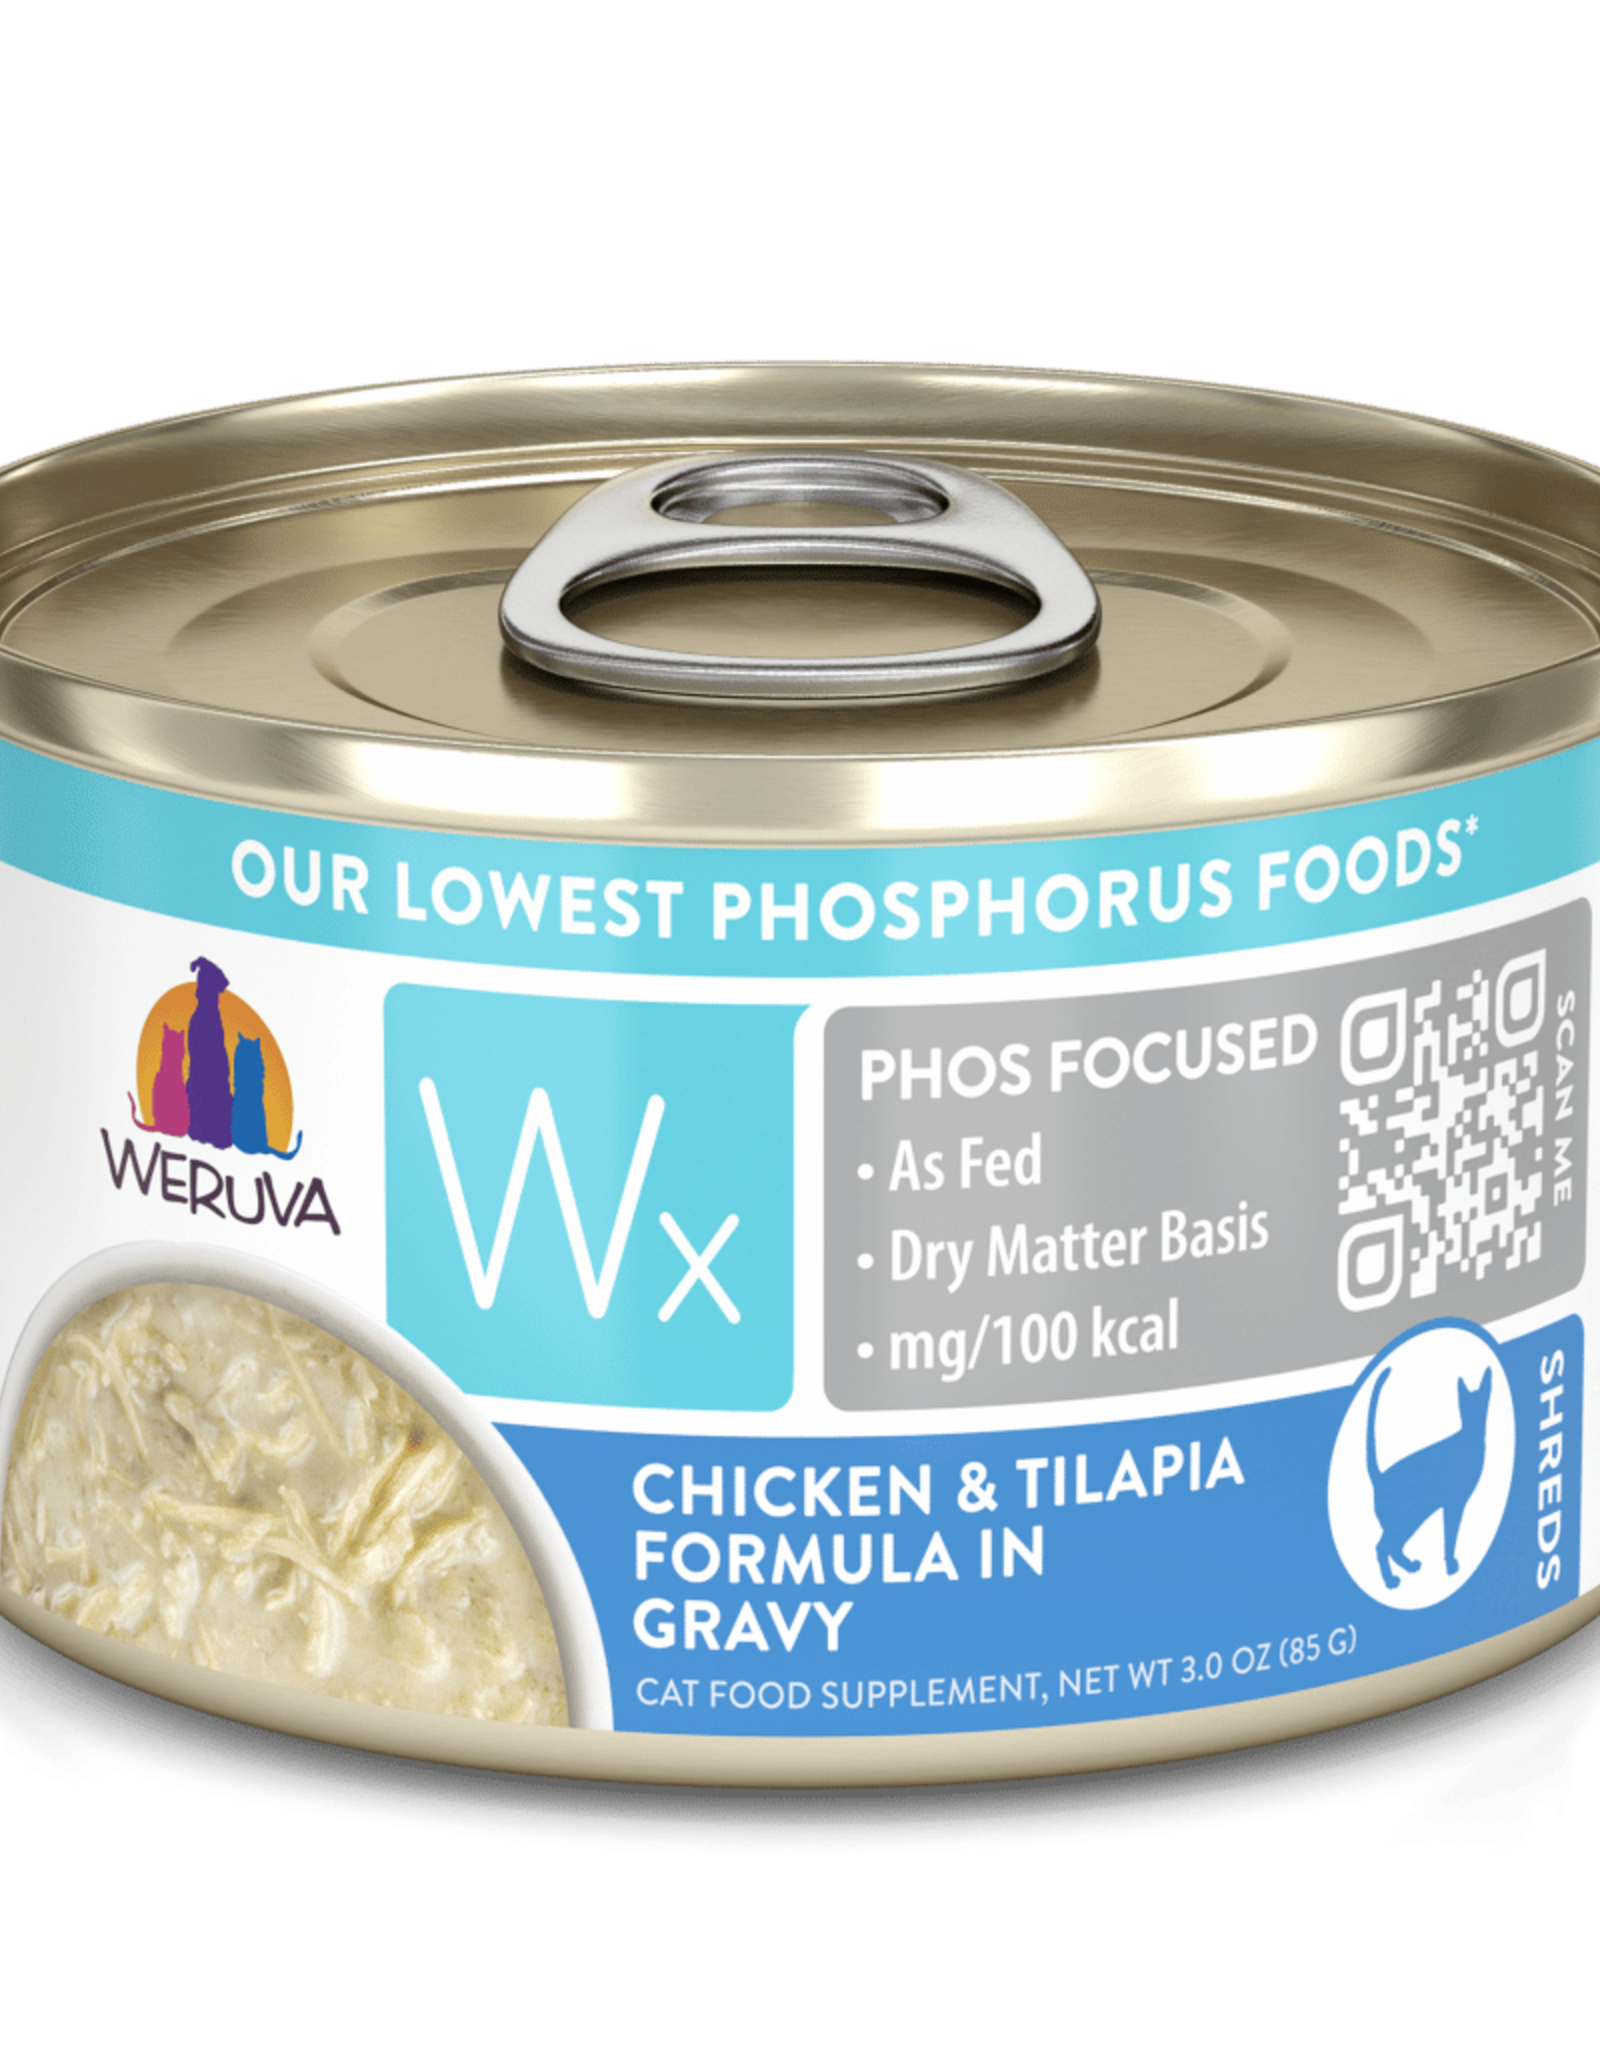 Weruva Wx Chicken Tilapia Formula in Gravy